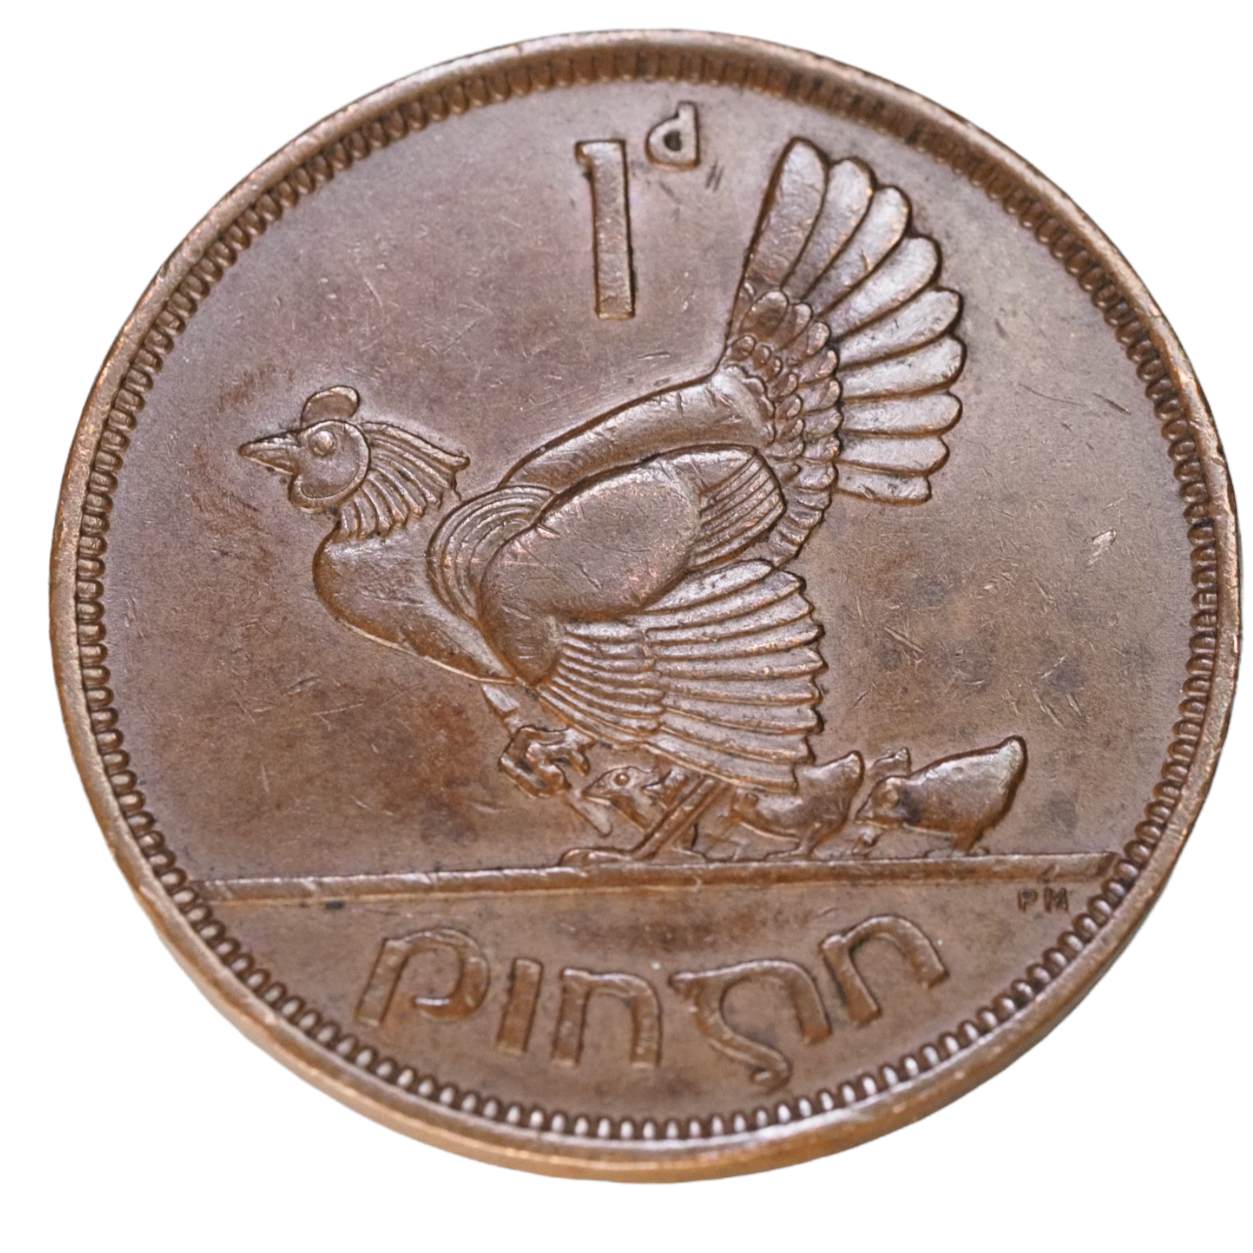 1 d Pingin ,Ireland 1942 Coin  XF World Coin Bronze #K1301